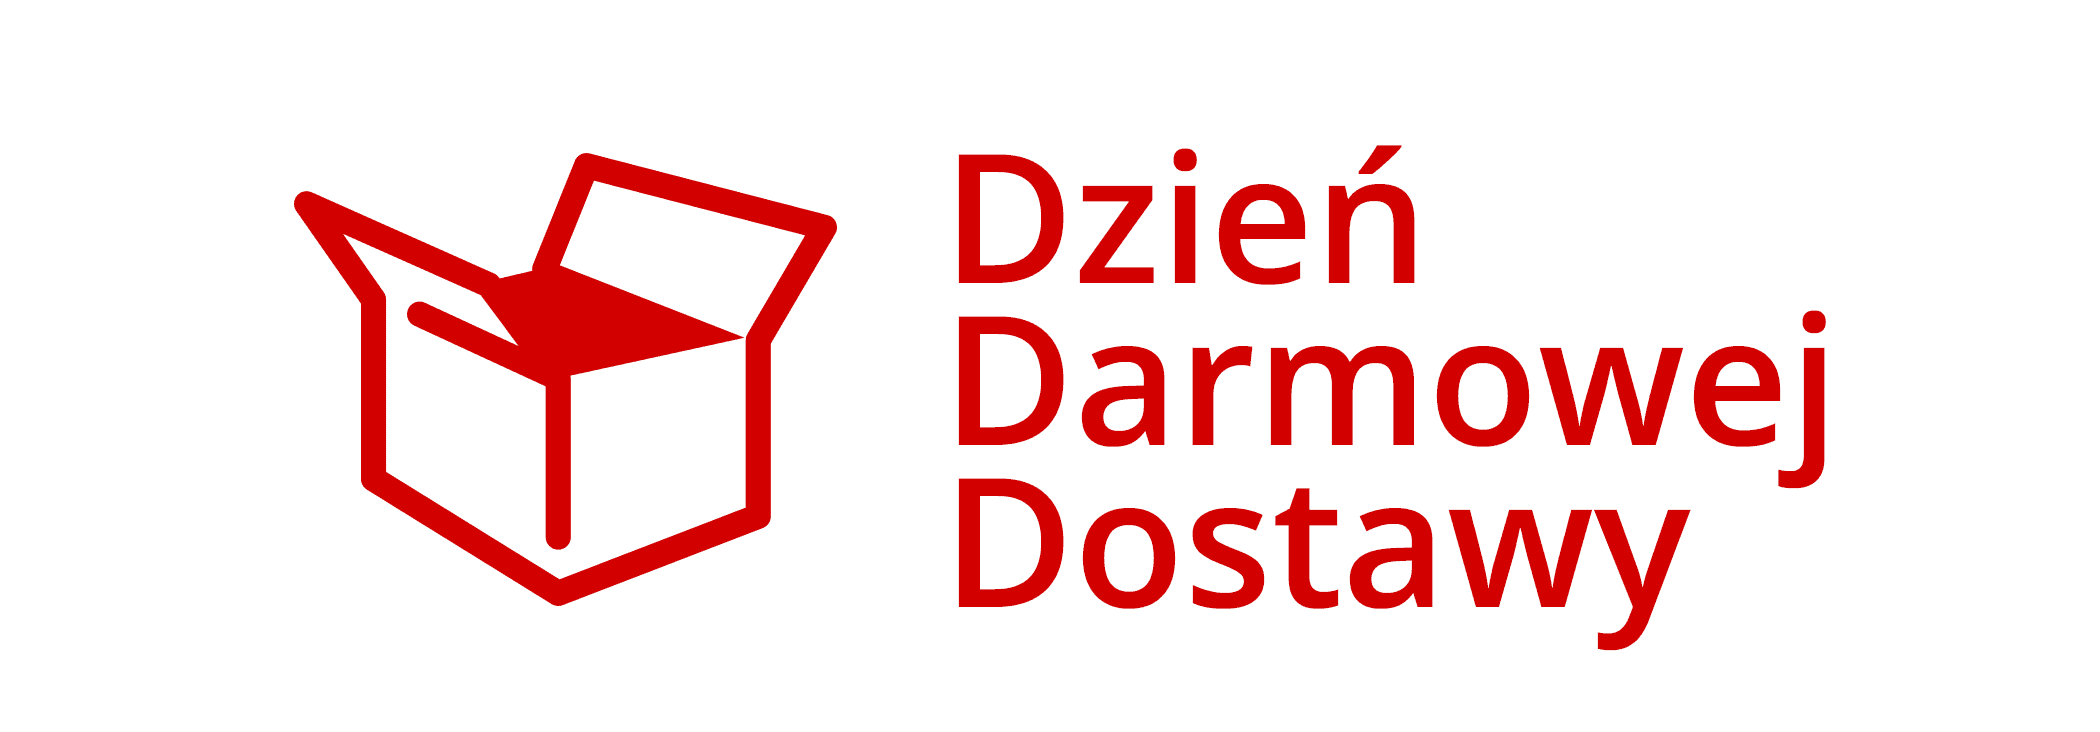 ddd-logo